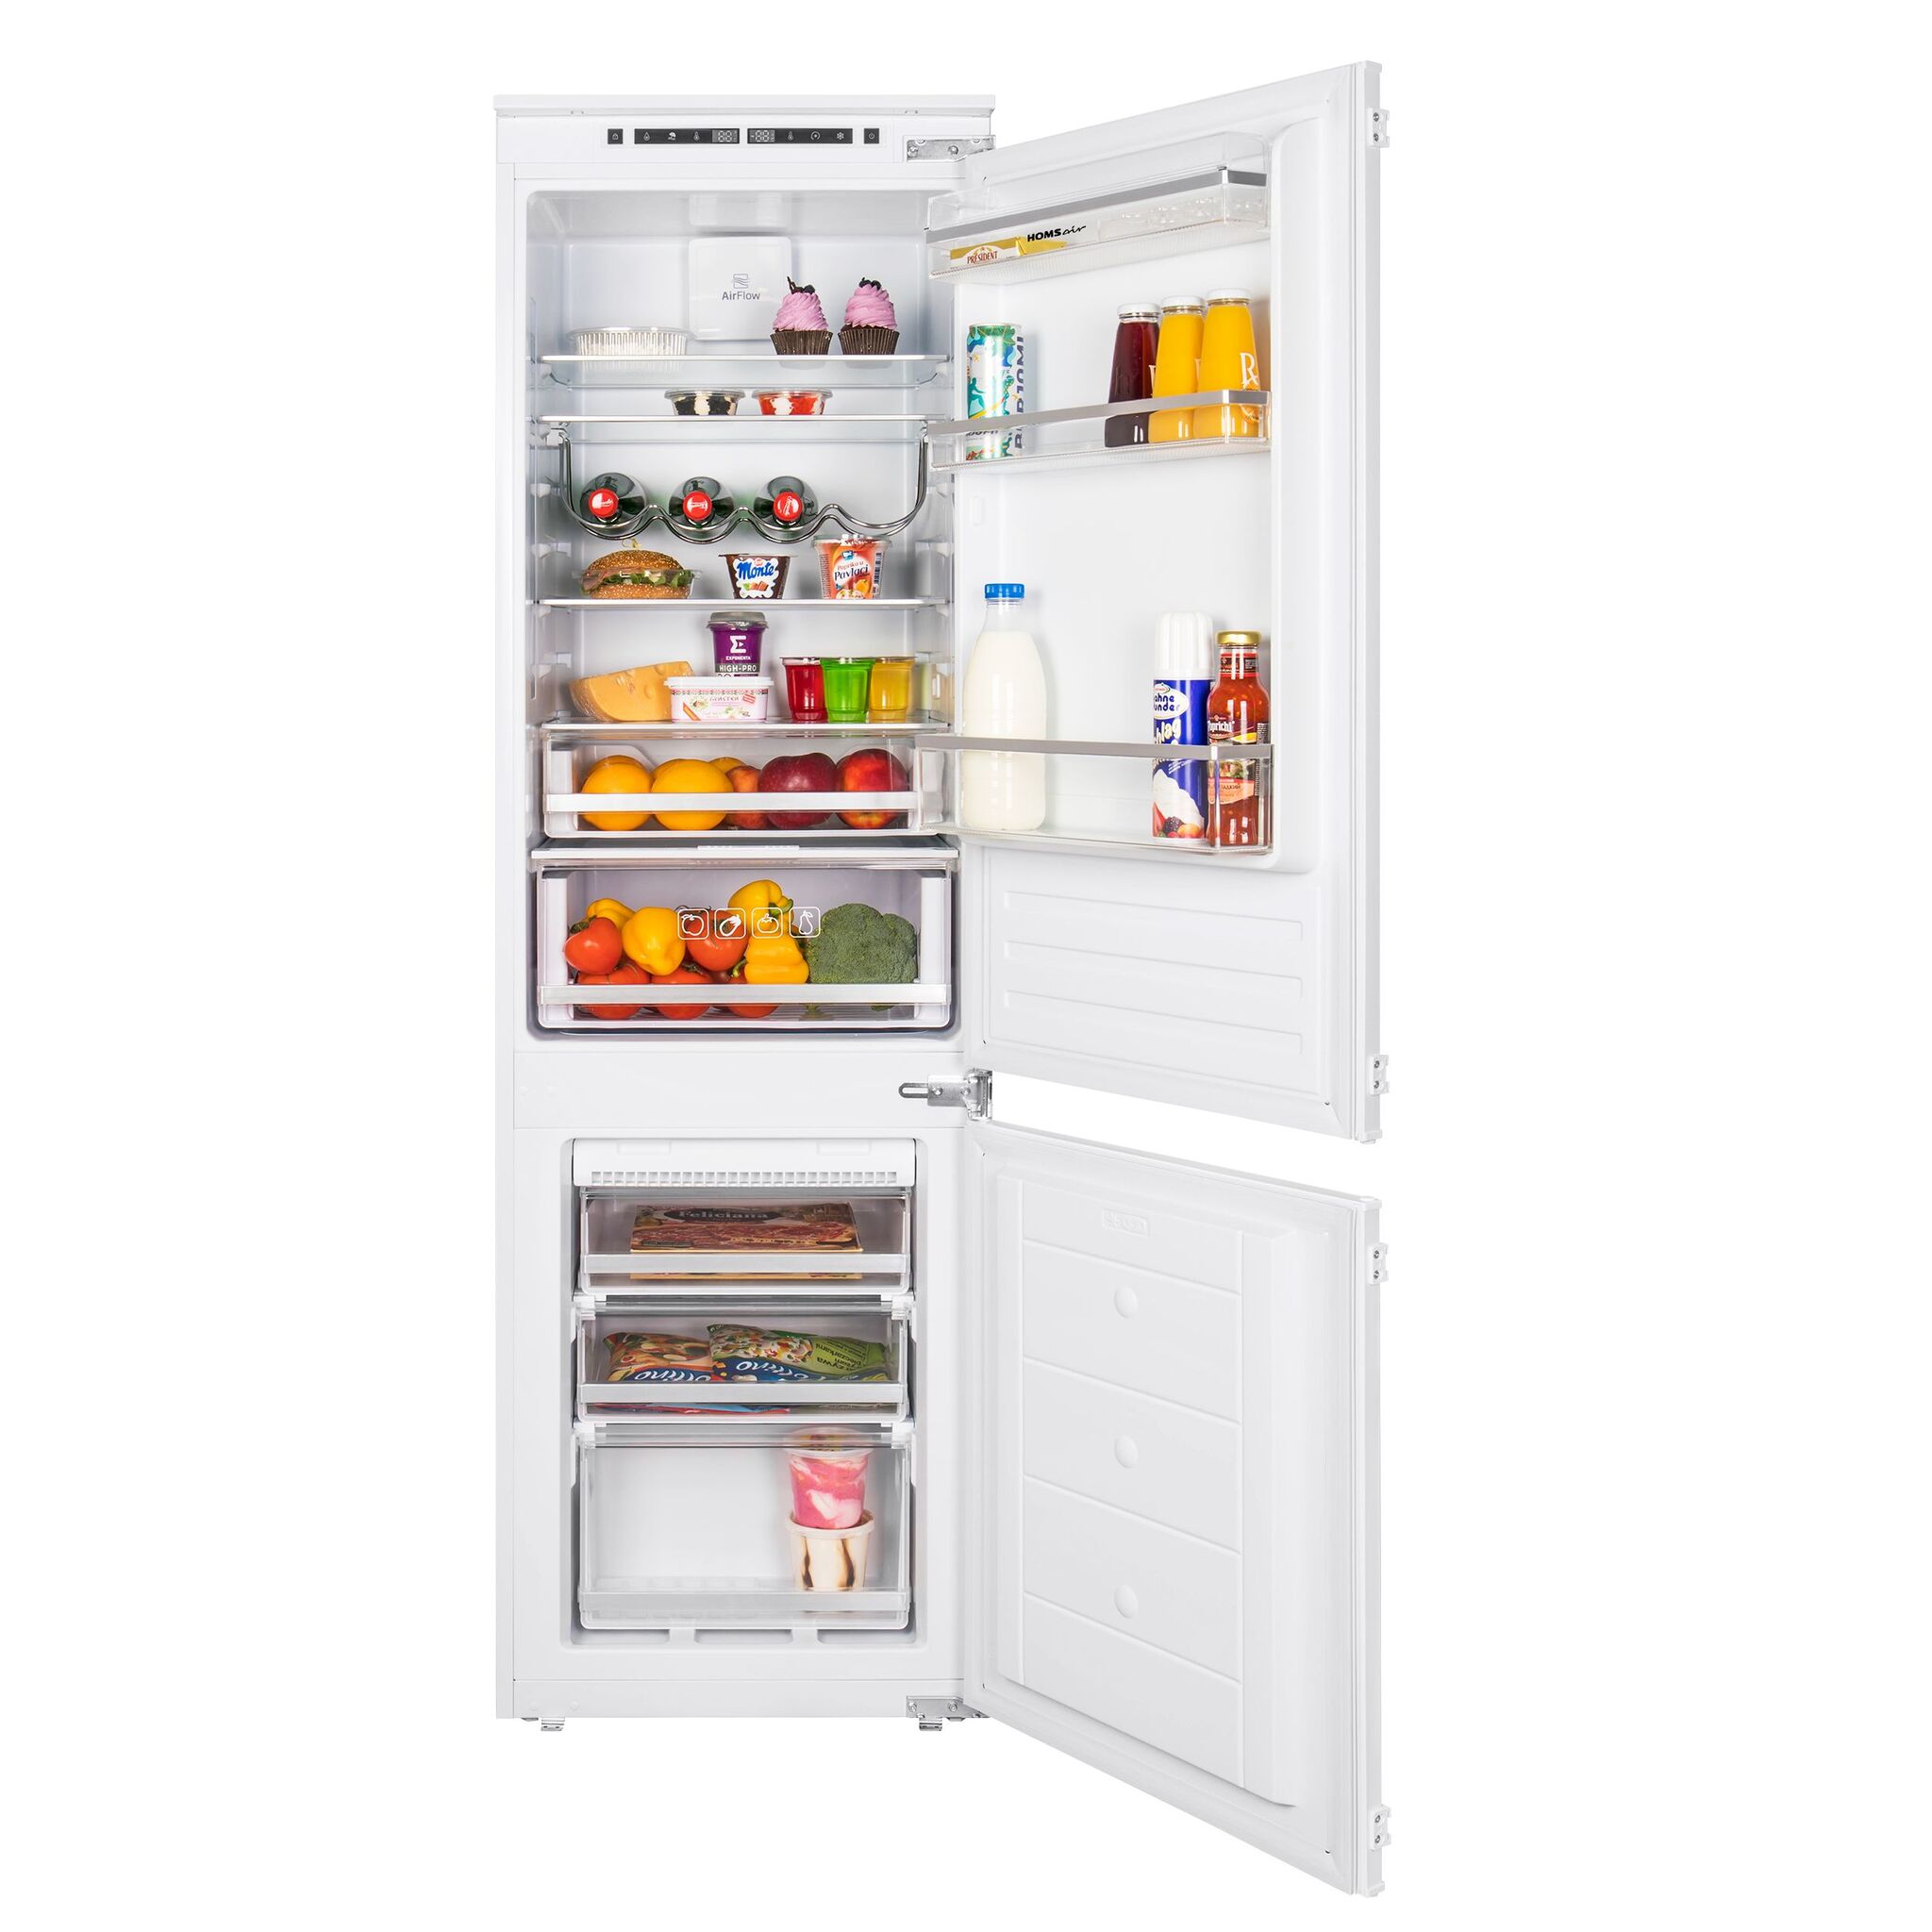 Купить холодильник maunfeld. Холодильник Maunfeld mbf177nfwh. Встраиваемый холодильник Ascoli adrf225wbi. Встраиваемый холодильник Maunfeld MBF 177nffw. Встраиваемый холодильник Maunfeld mbf177nfwh схема встраивания.